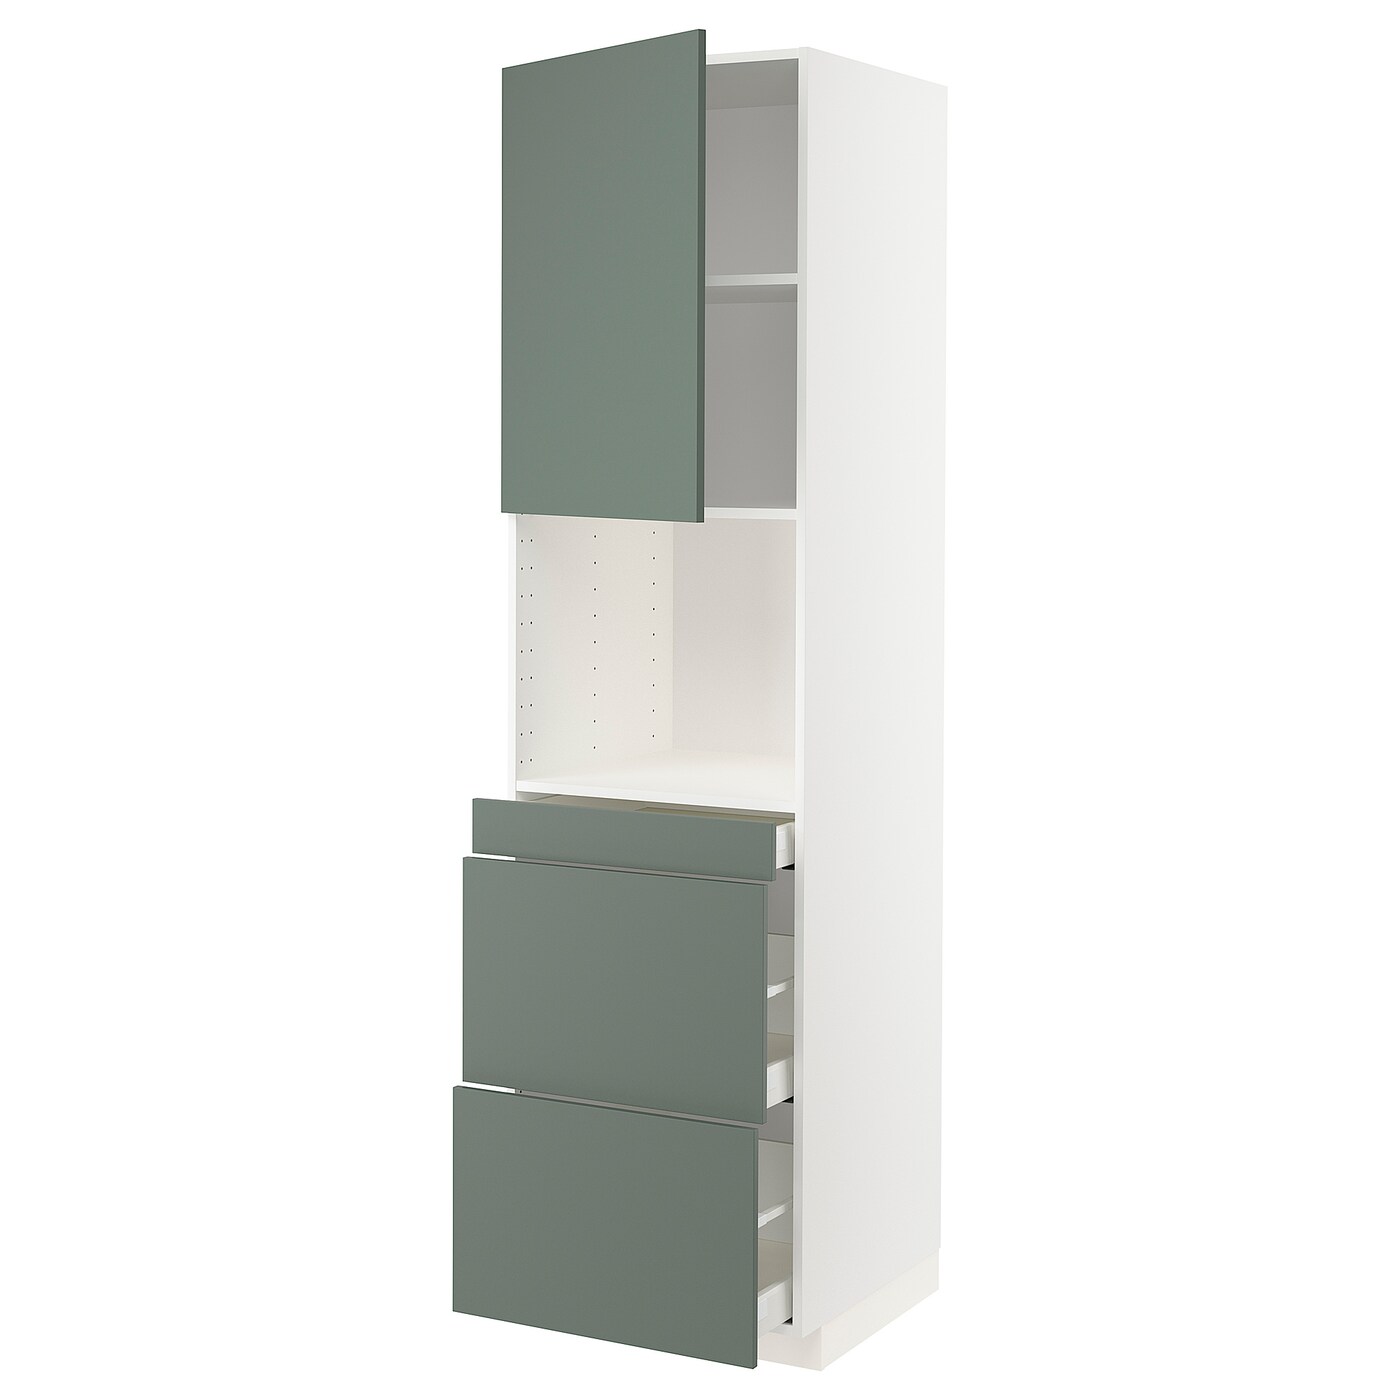 Шкаф - METOD / MAXIMERA  IKEA/ МЕТОД/МАКСИМЕРА  ИКЕА,  228х60 см, зеленый/белый